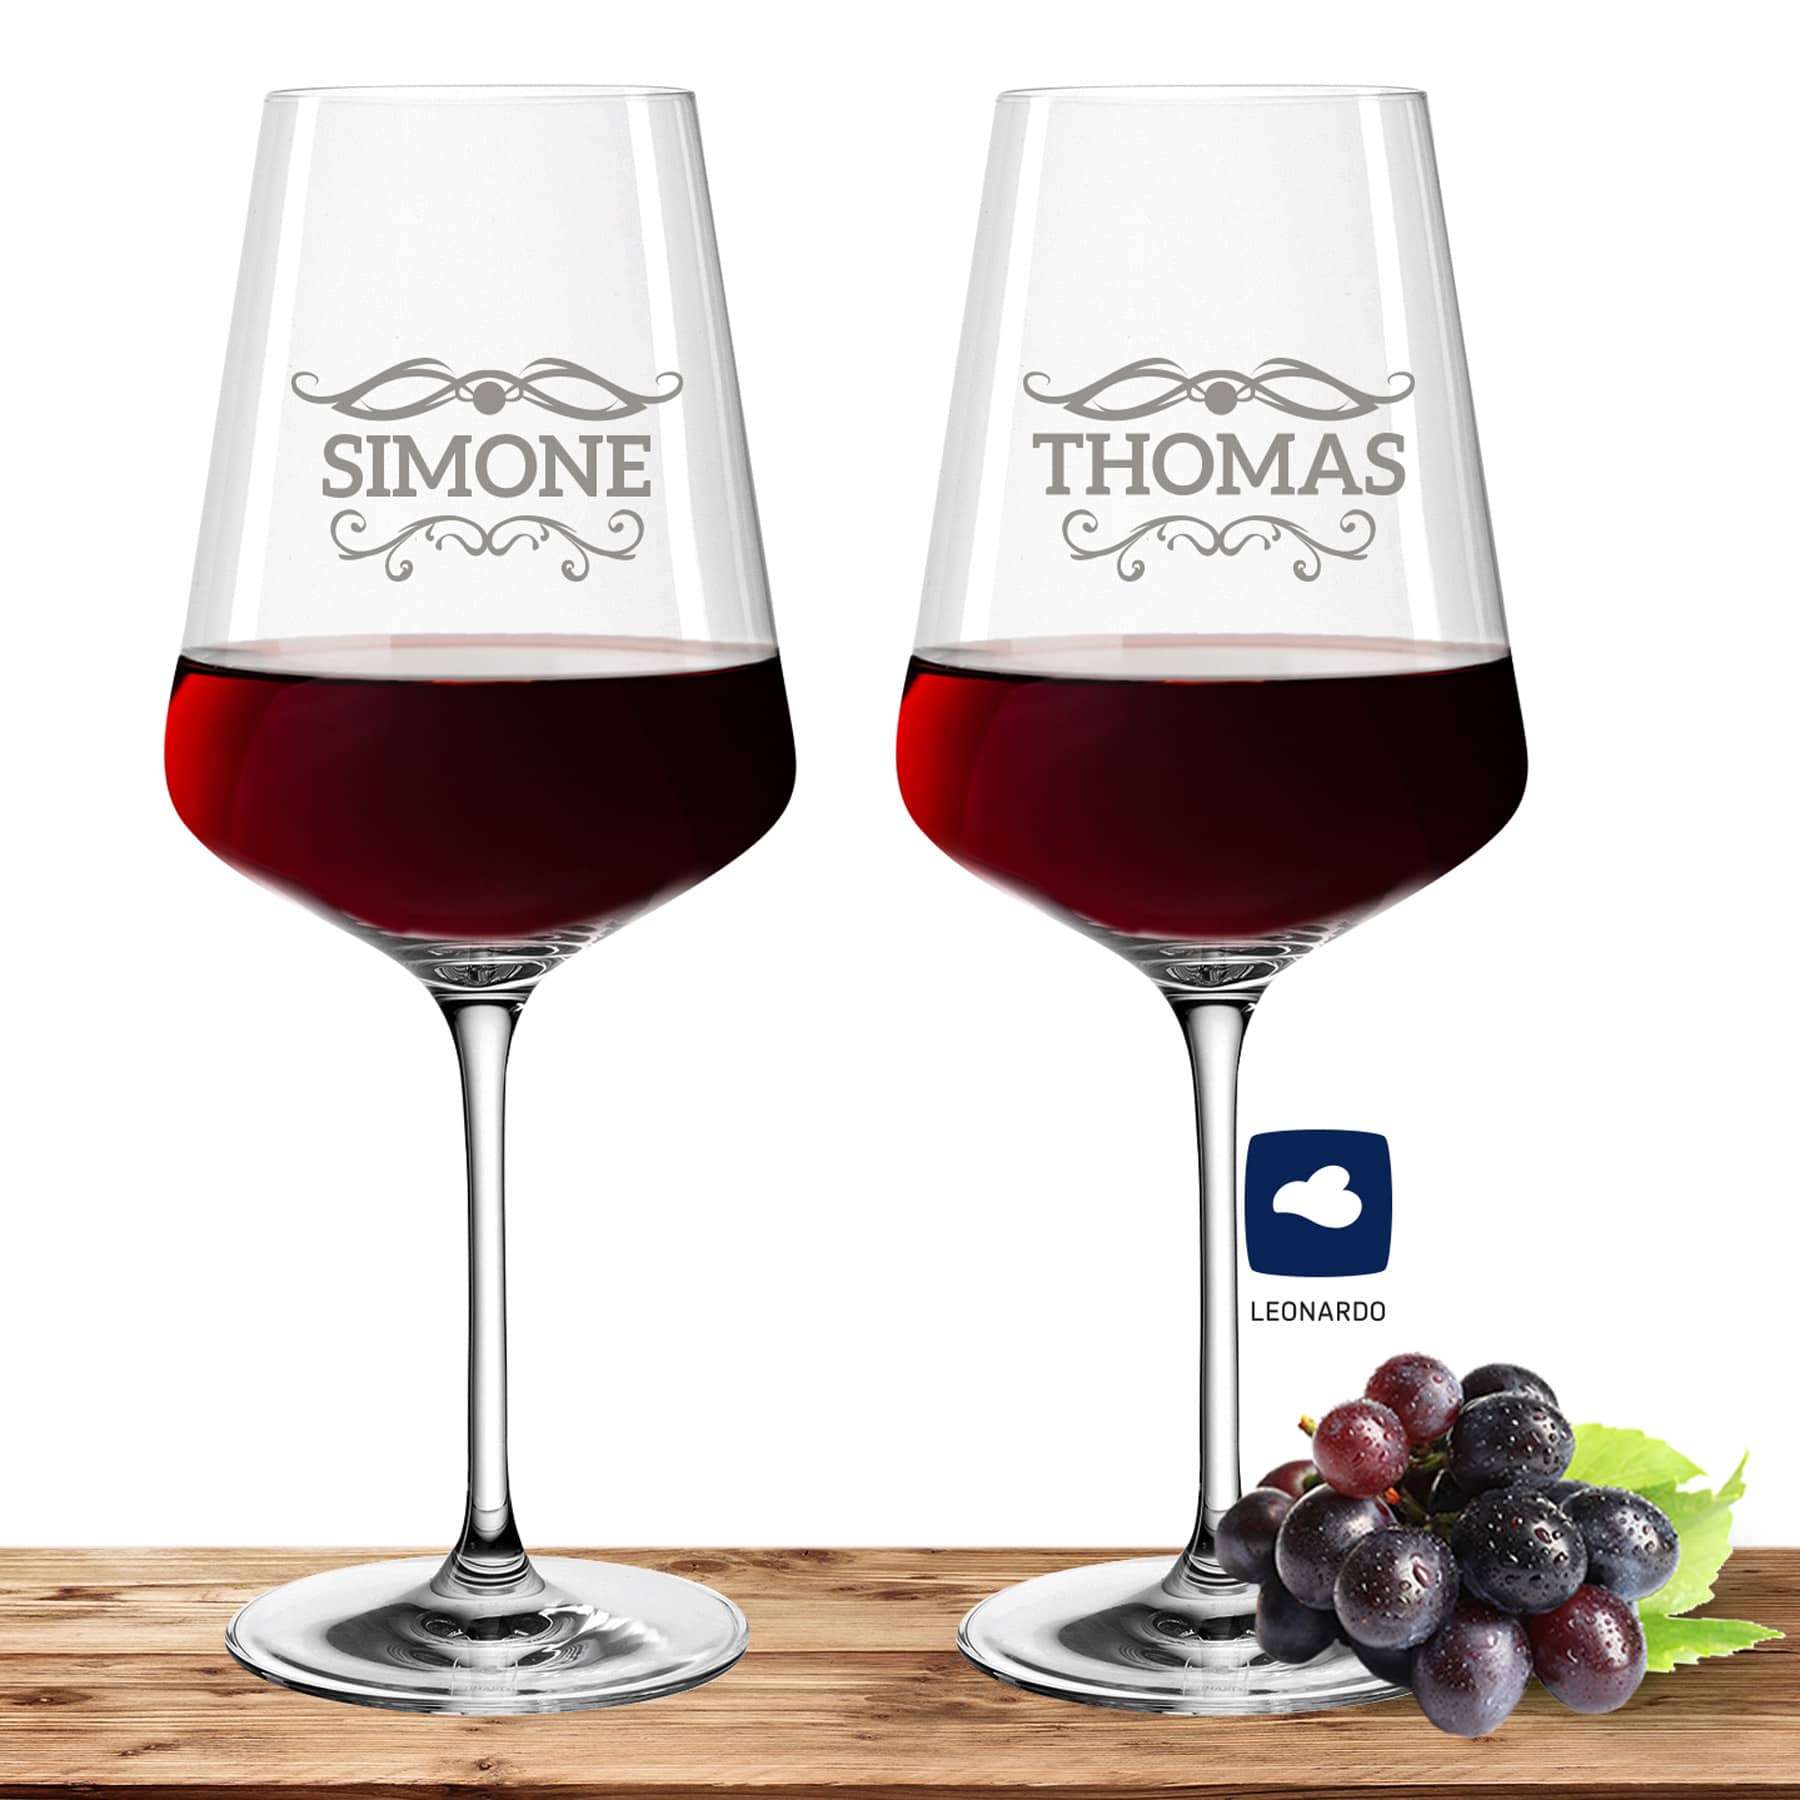 2x Leonardo Rotweinglas XL mit Namen oder Wunschtext graviert, 750ml, PUCCINI, personalisiertes Premium Weinglas in Gastroqualität, (Barock 01)